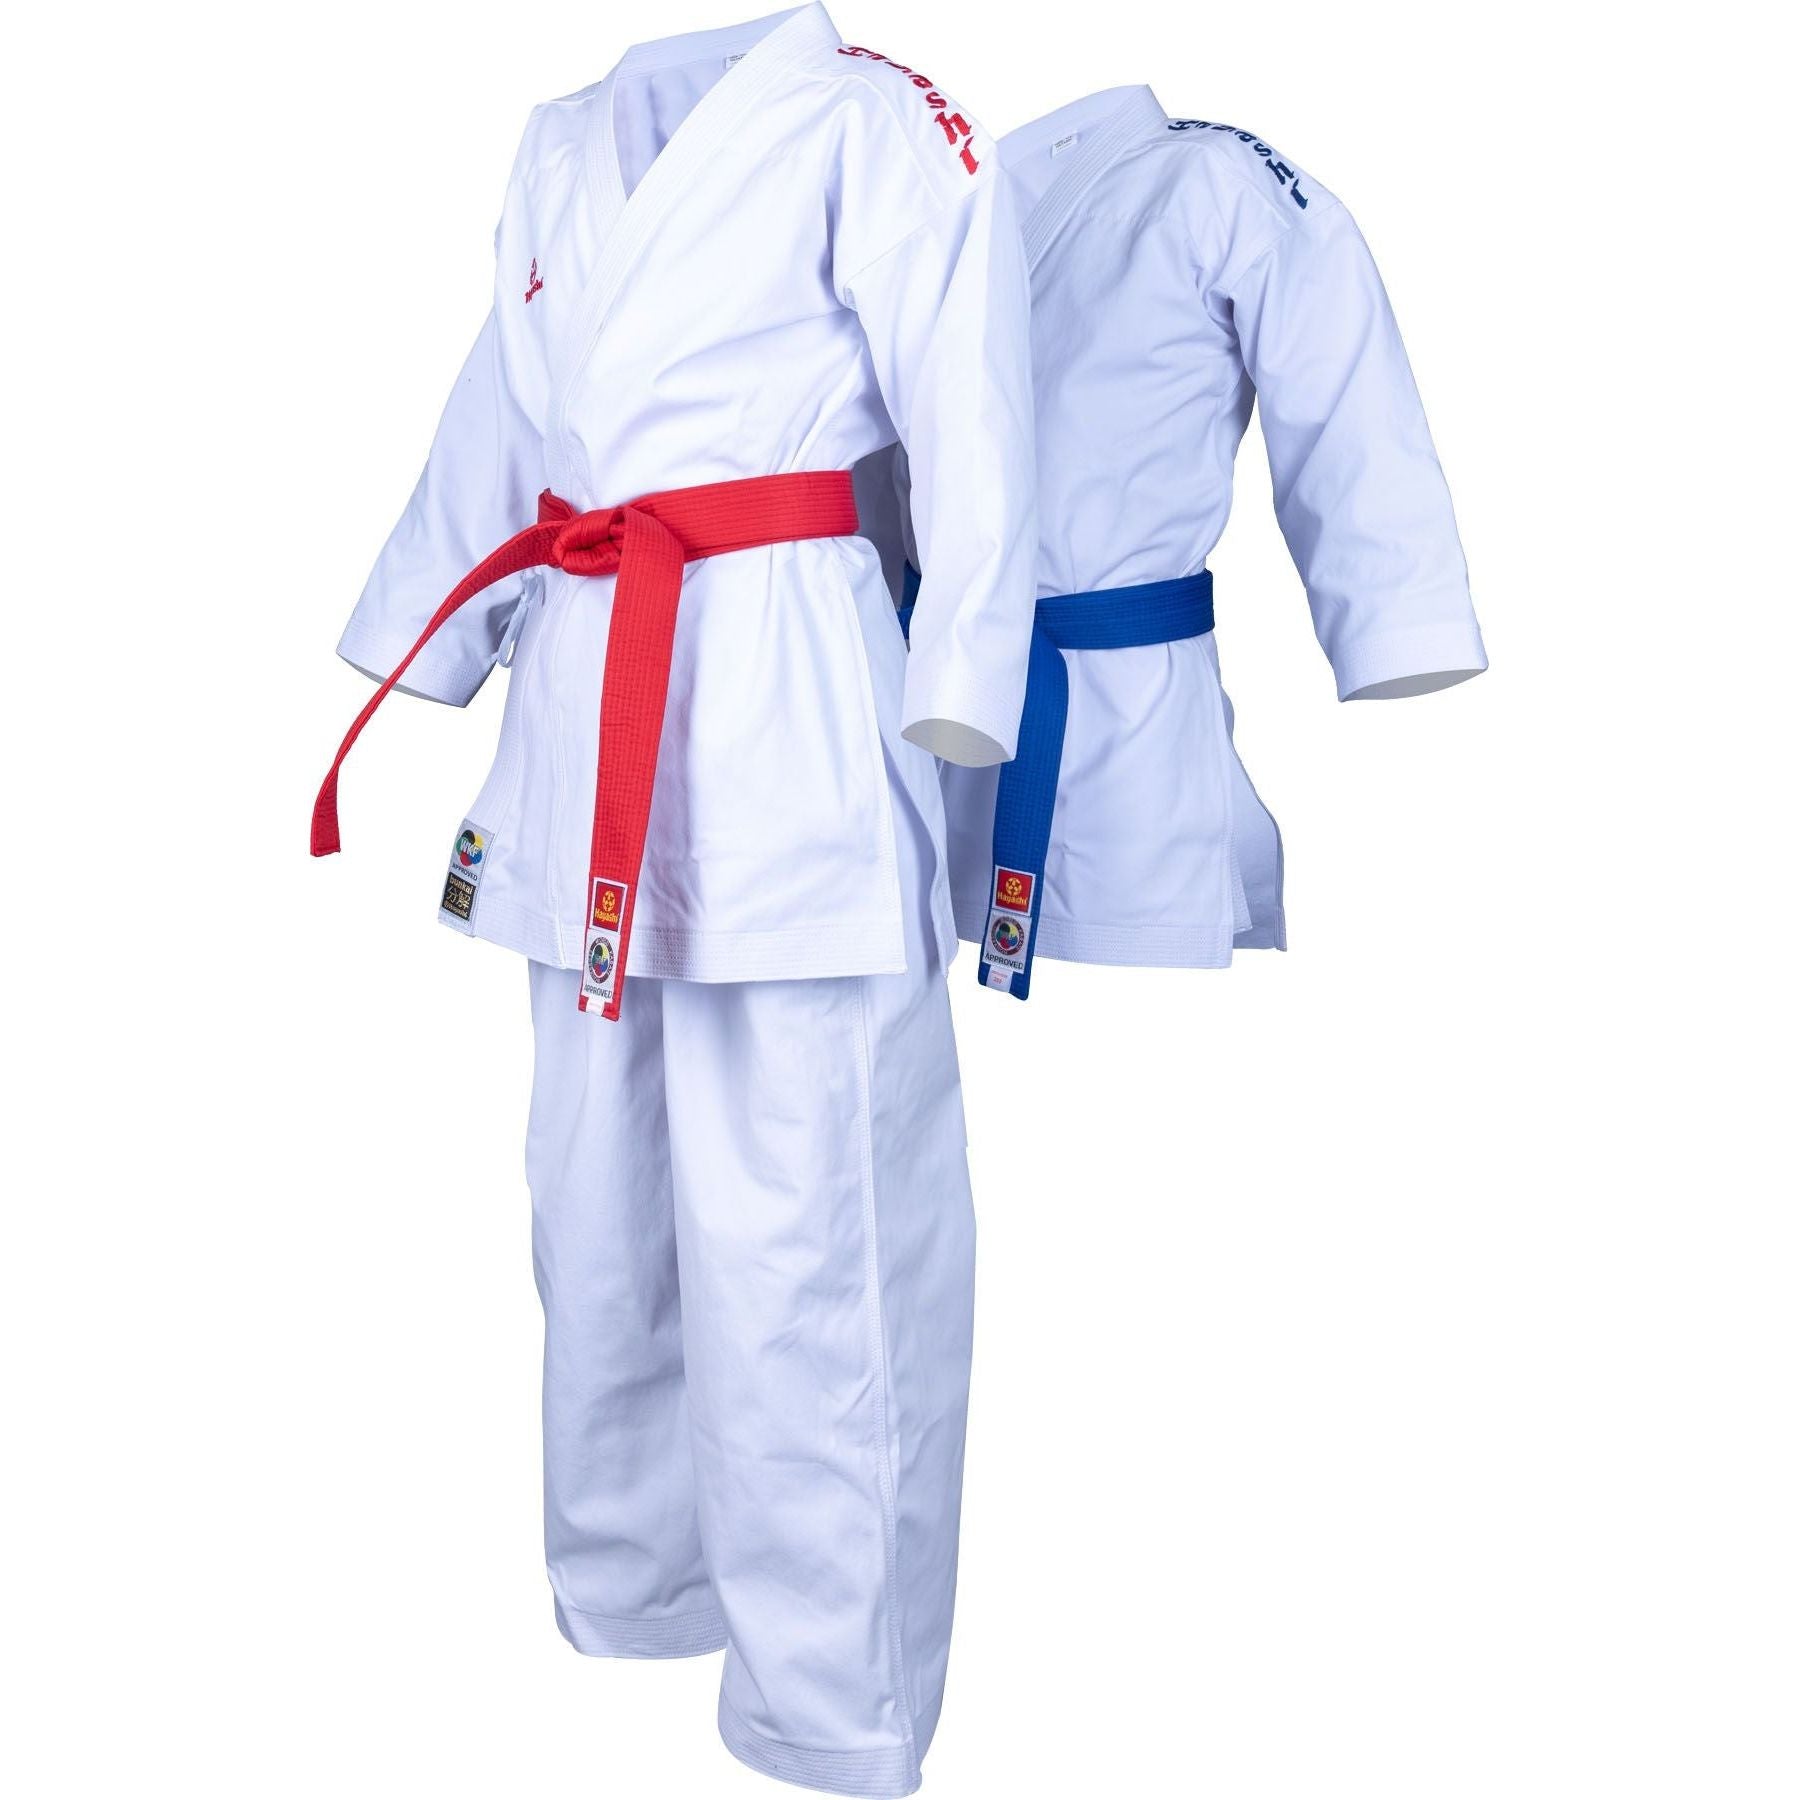 Karatepuku "Bunkai" 2.0 -setti 2 takkia ja 1 housut